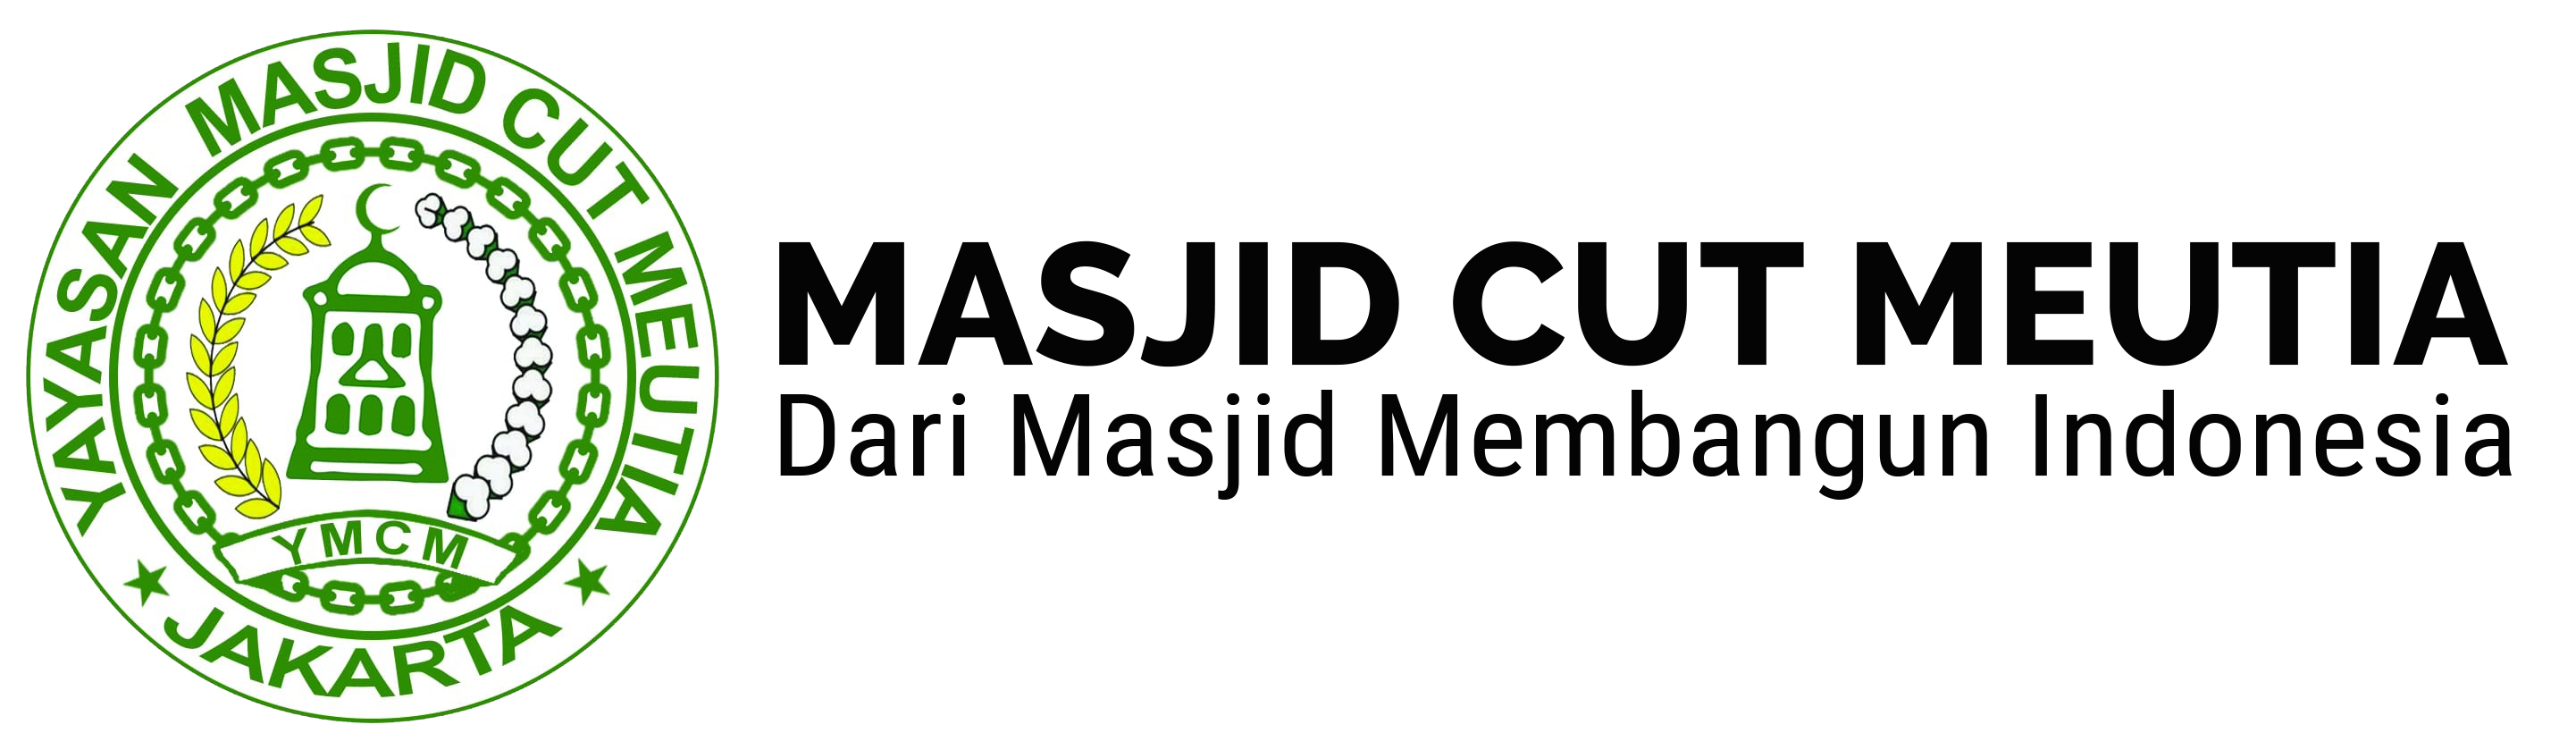 Masjid Cut Meutia Jakarta